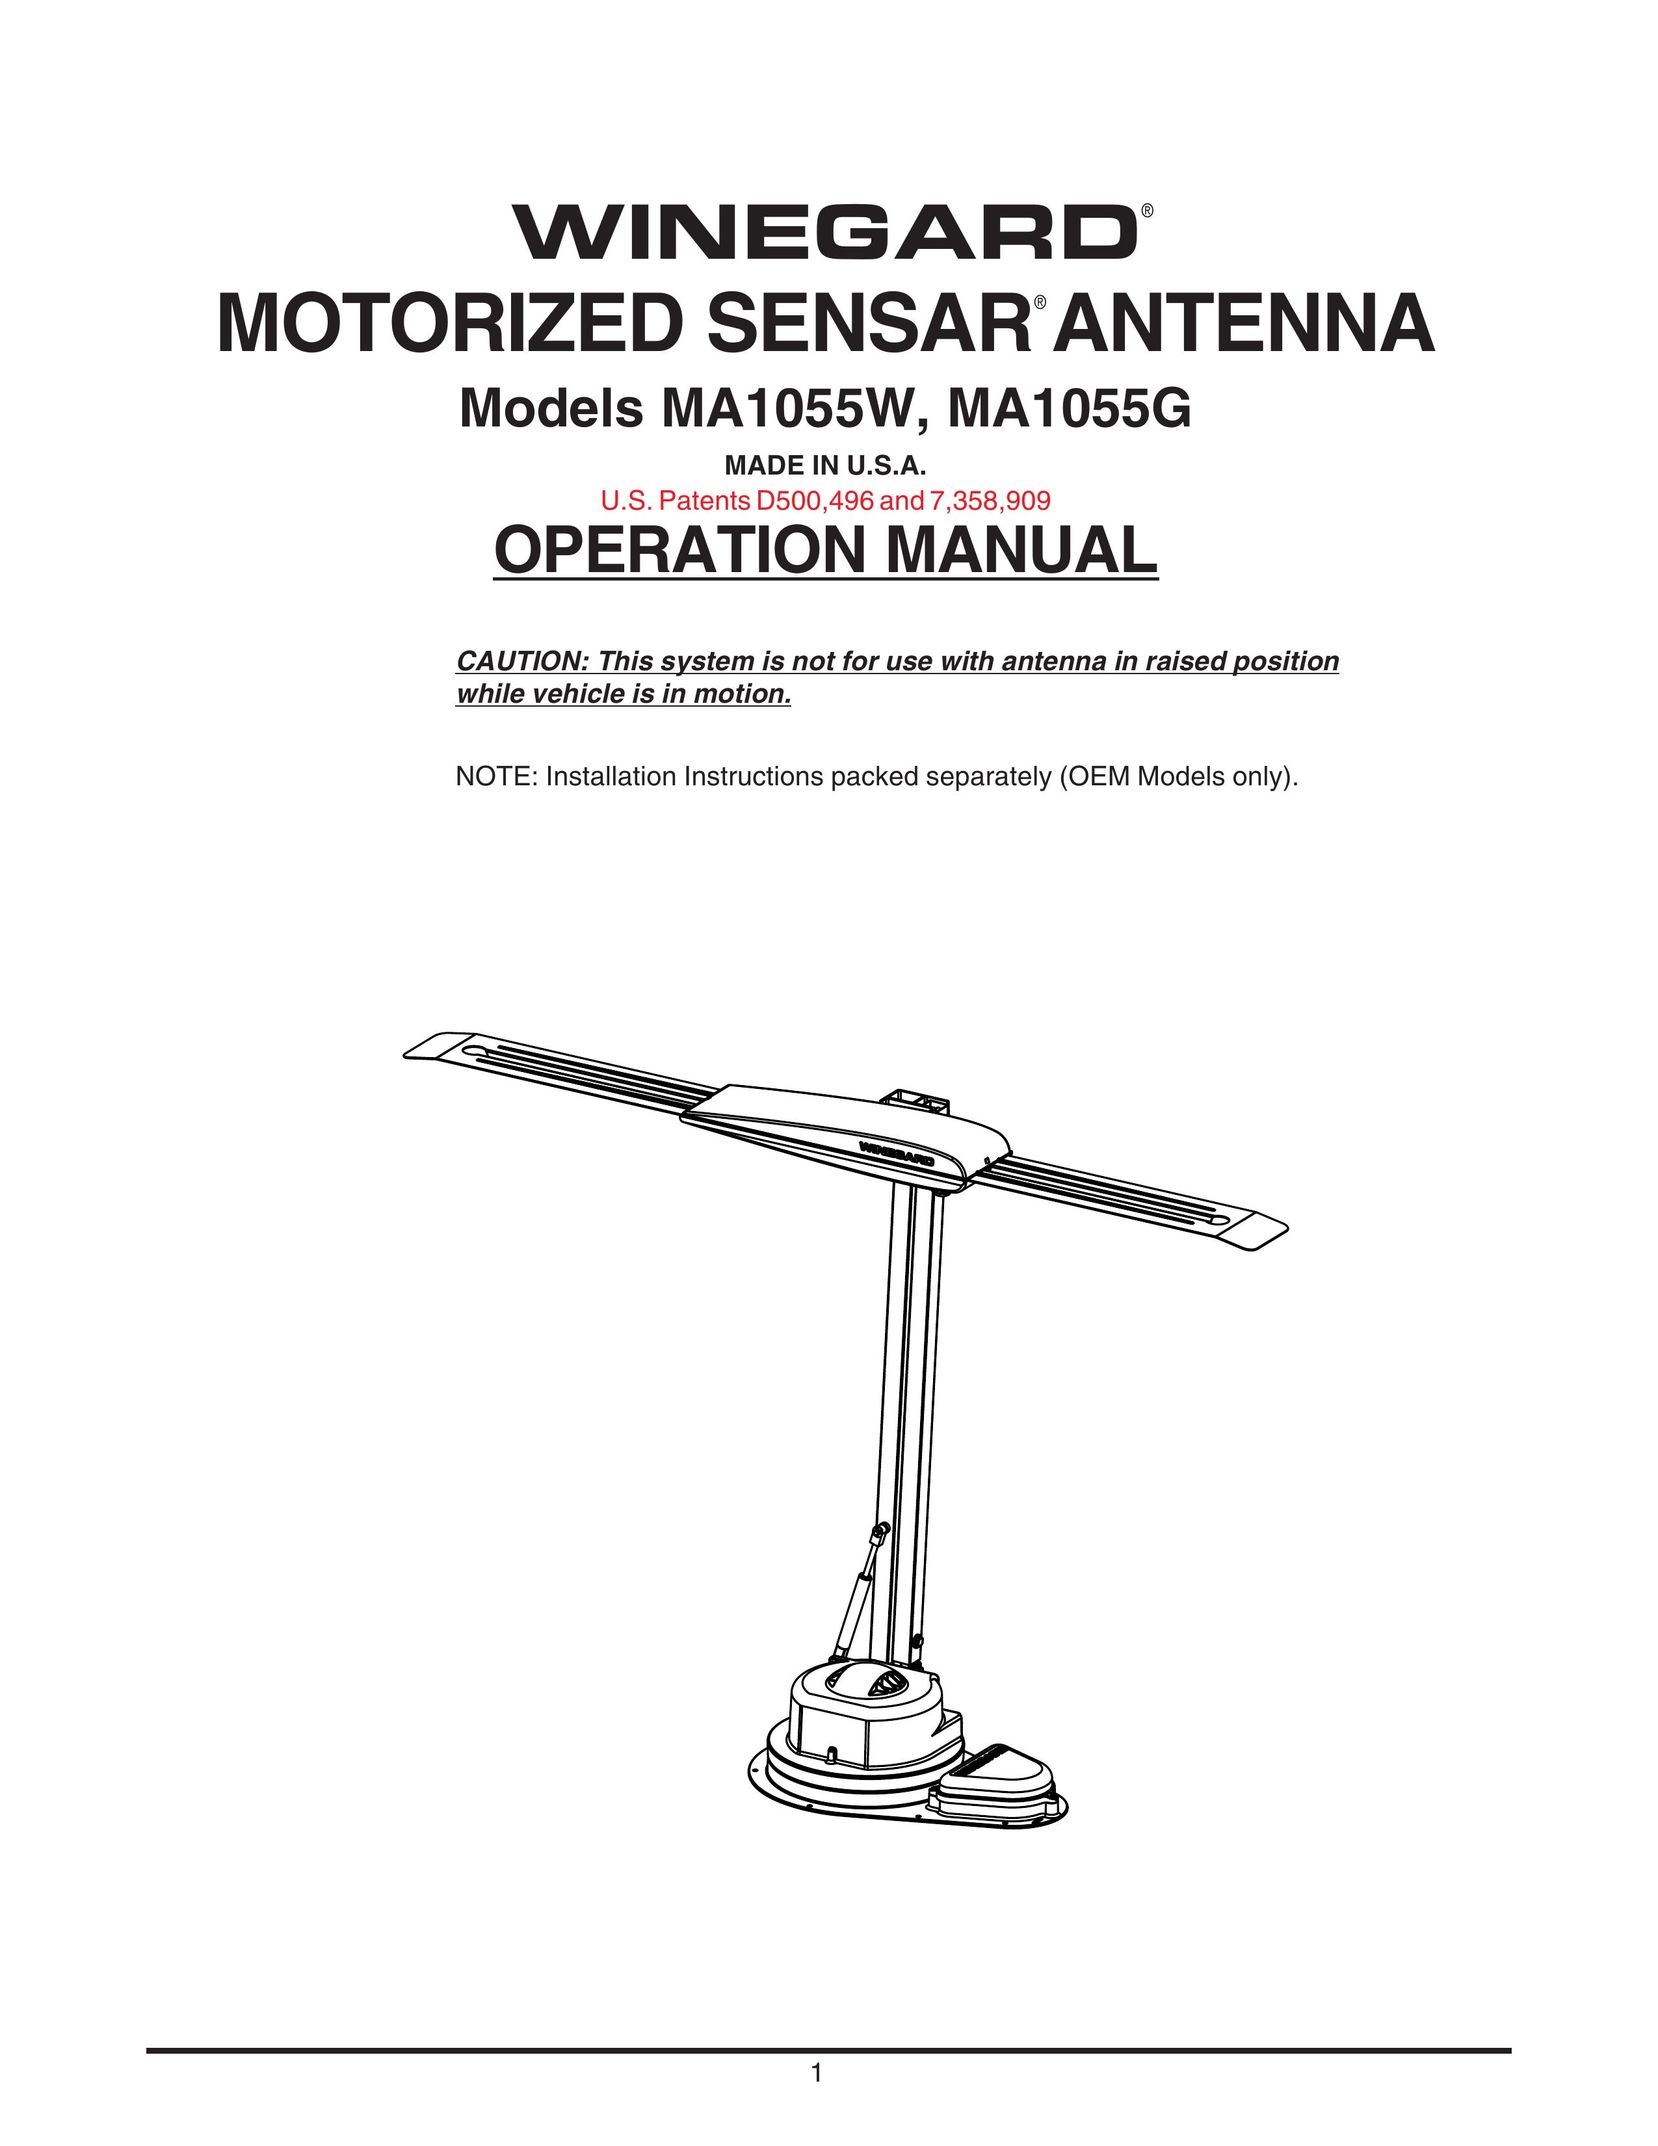 Winegard MA1055W TV Antenna User Manual